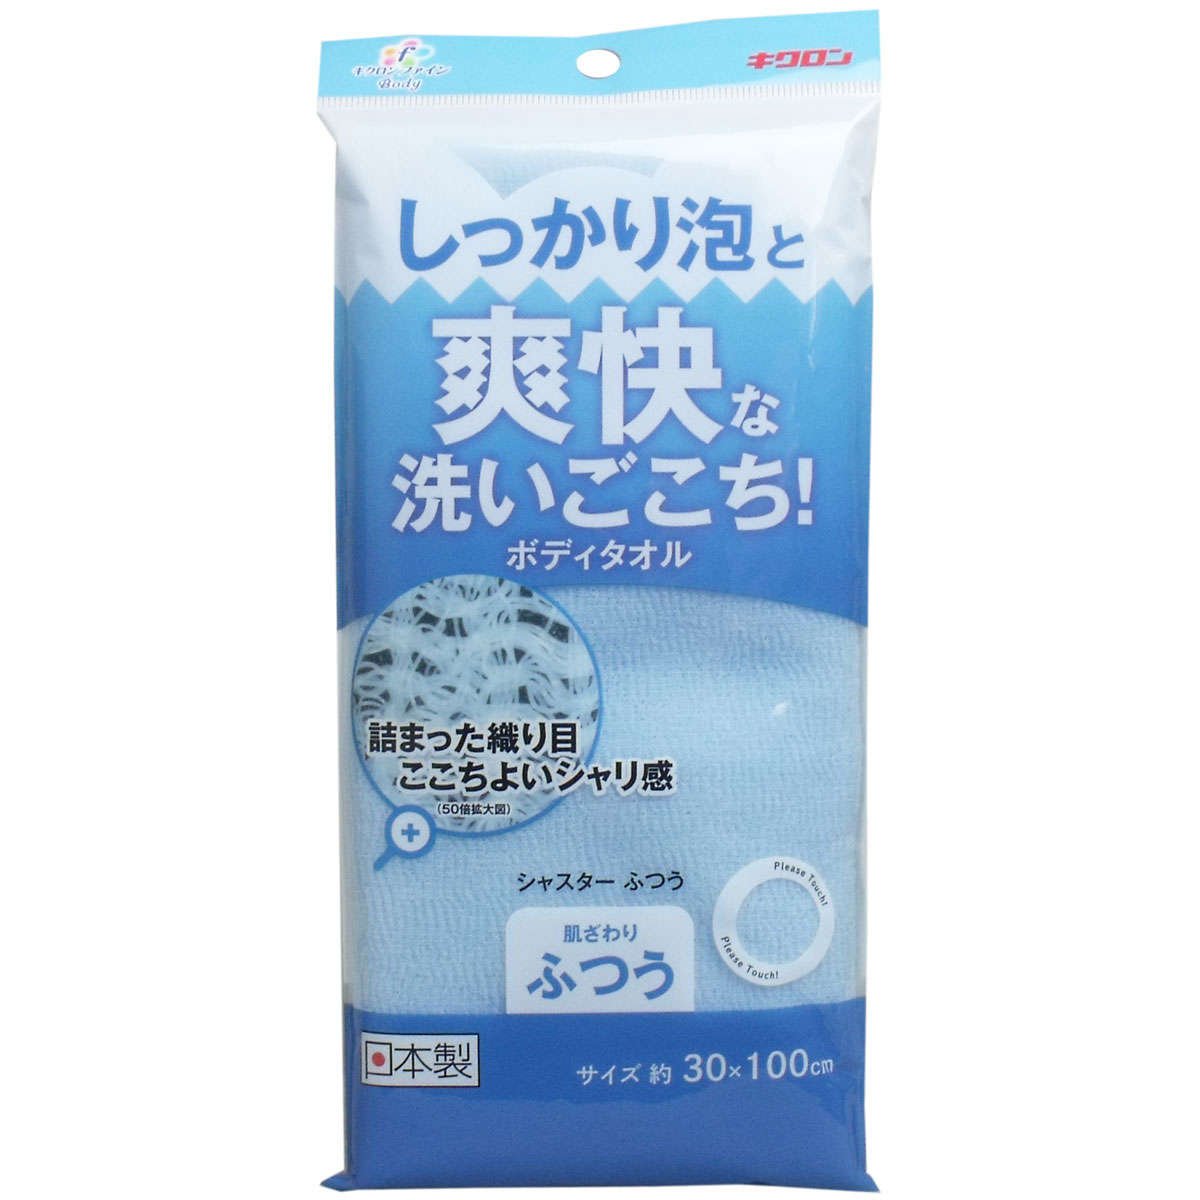 キクロン ボディタオル ふつう ブルー 30cm×100cm 1枚入 爽快な洗いごこち 体洗い 日本製 キクロンファイン シャスター